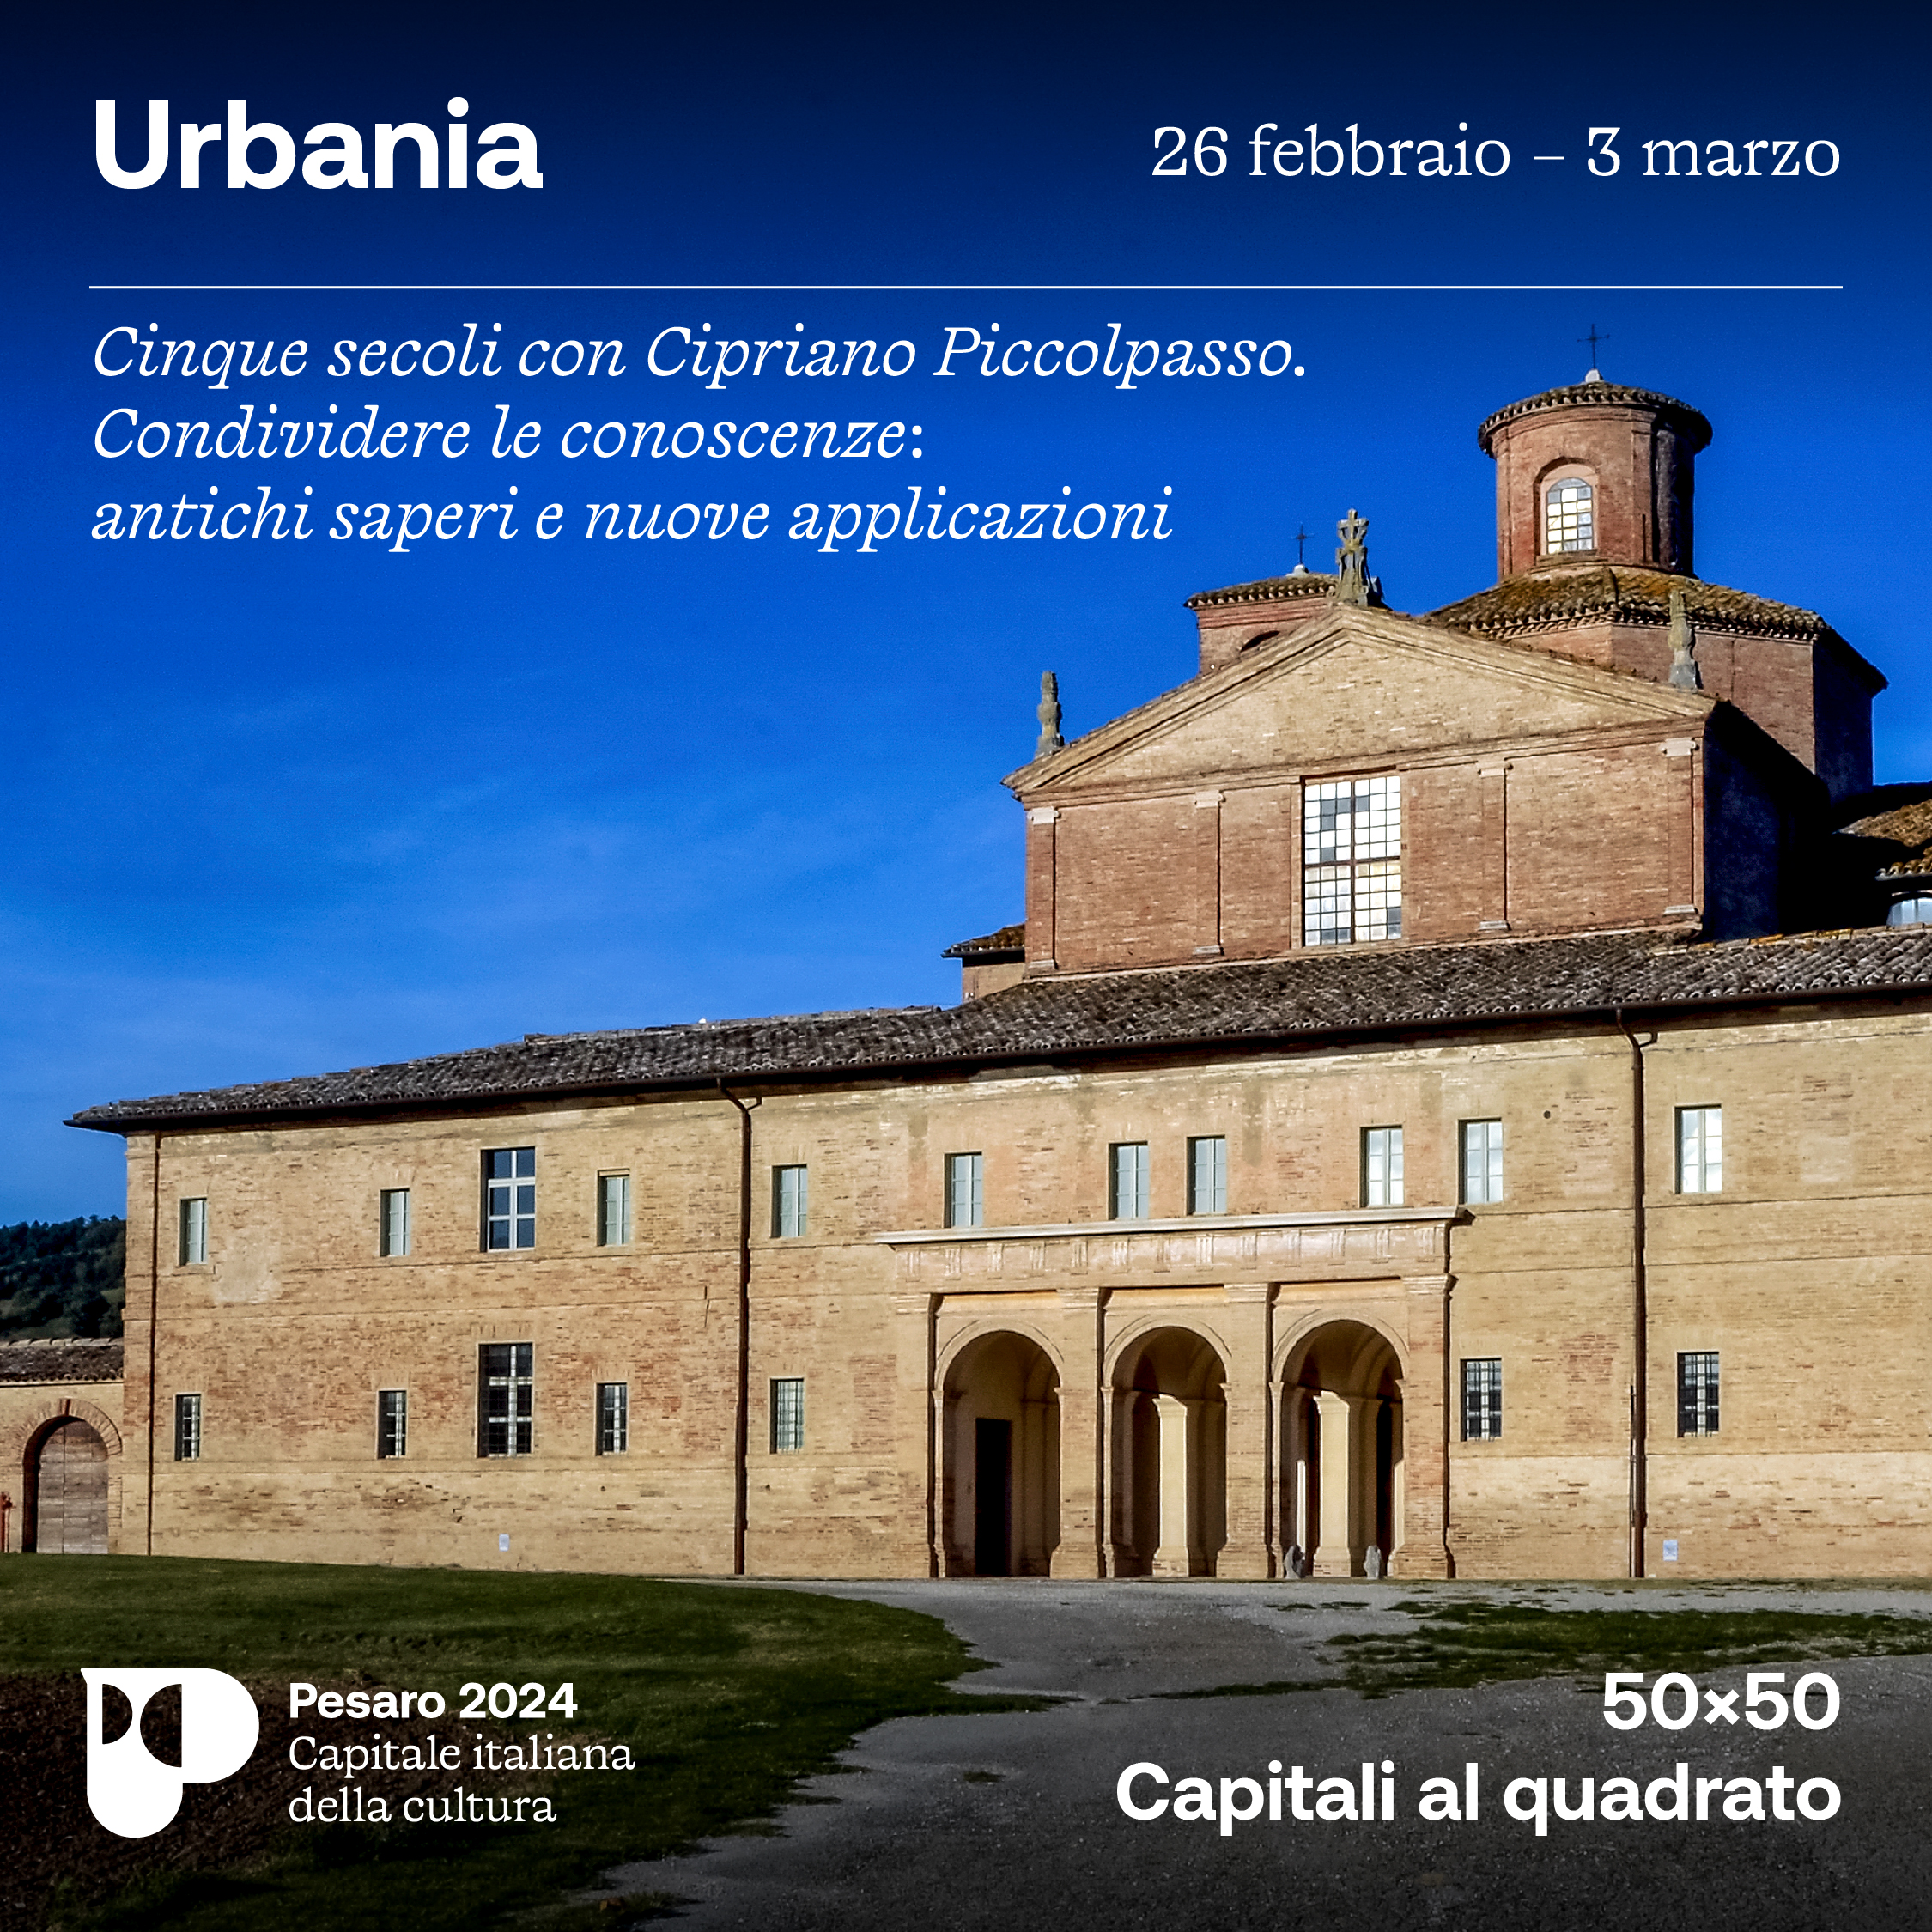 Pesaro 2024 alla scoperta di Urbania